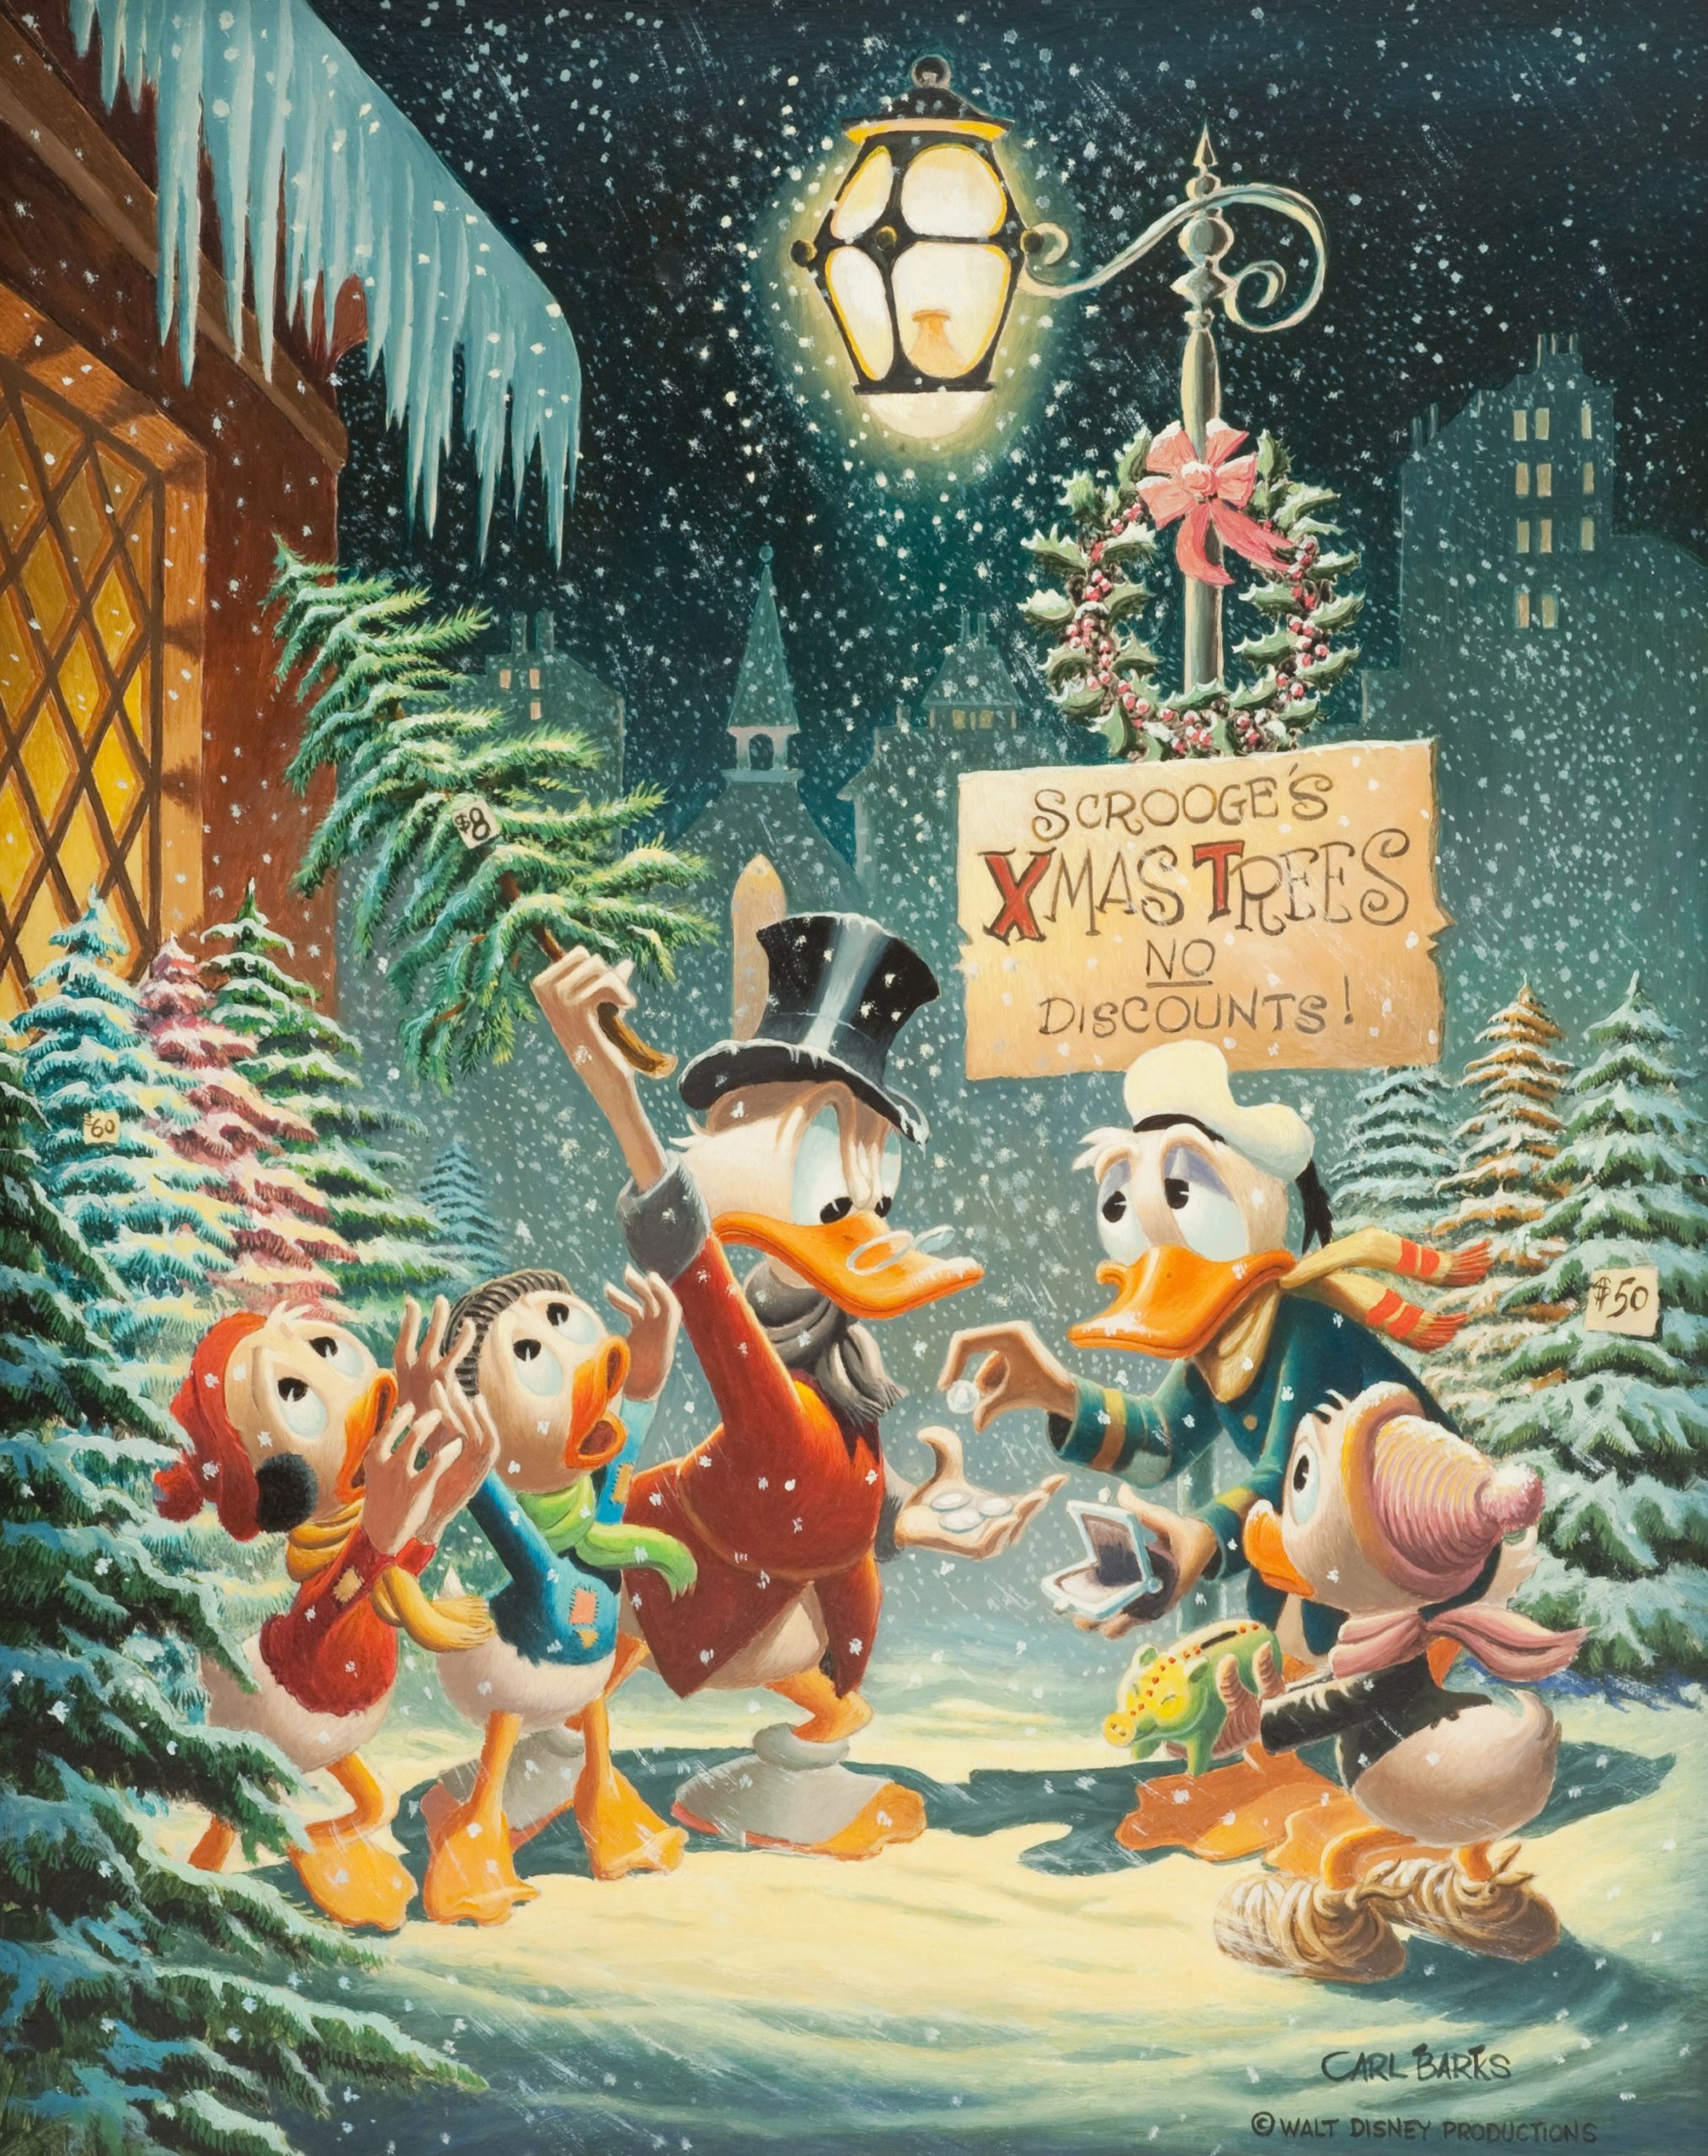 Il primo soggetto natalizio: Christmas Composition (1972)